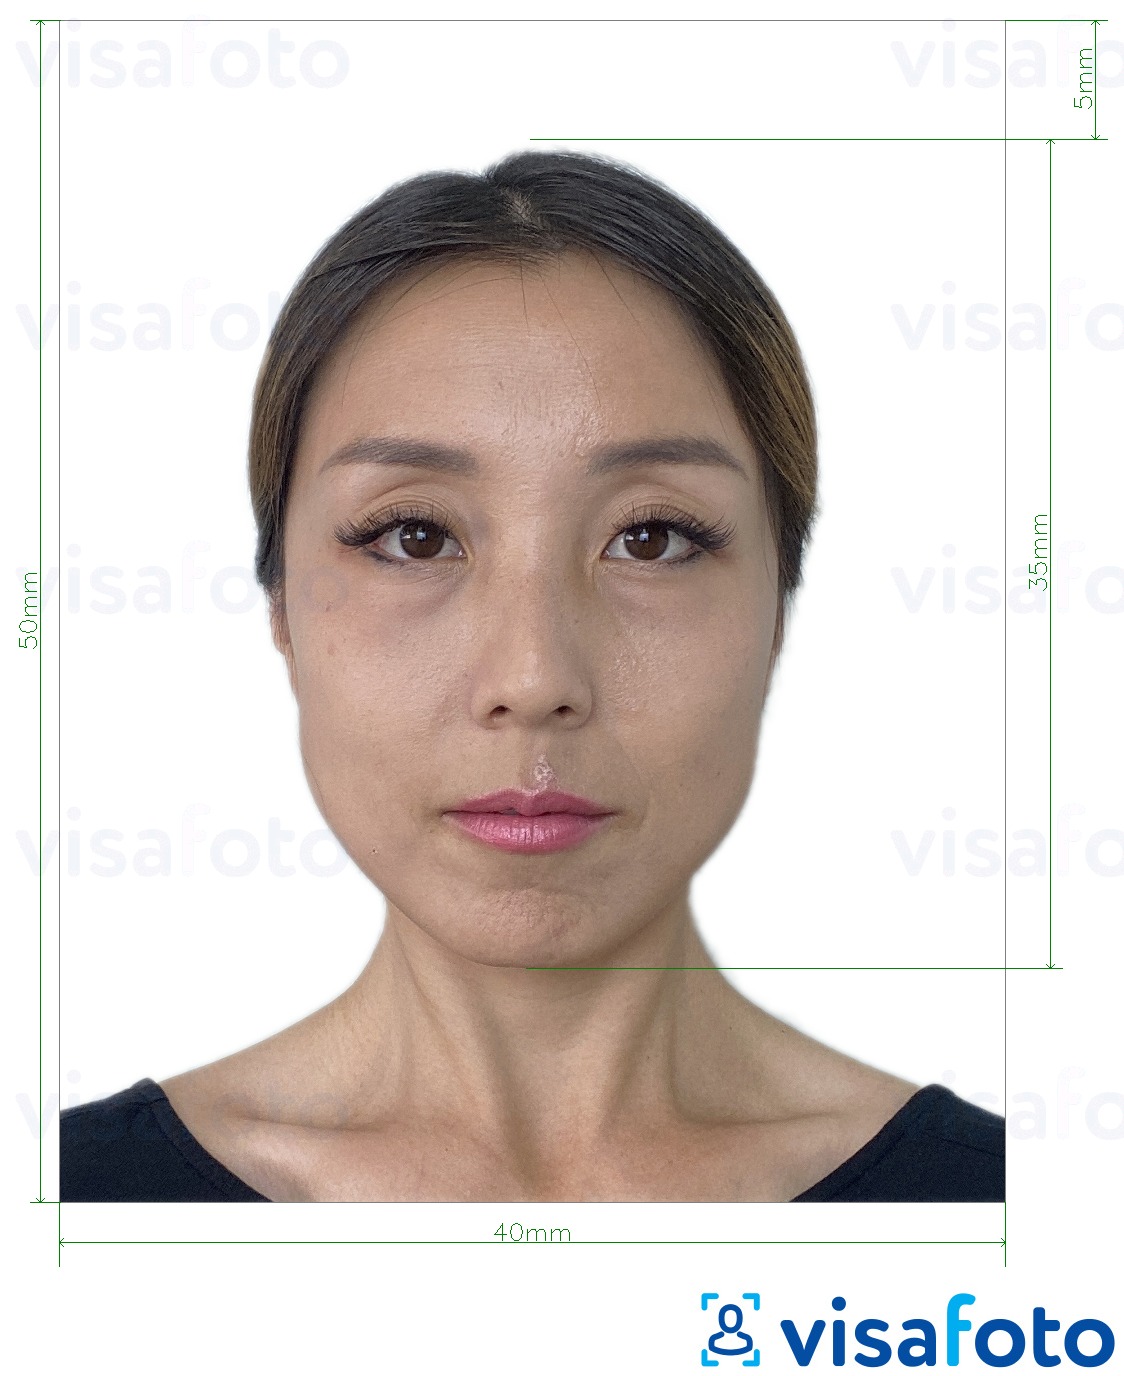 ფოტოს მაგალითი ჰონგ-კონგის პასპორტი 40x50 მმ (4x5 სმ) -სთვის ზუსტი ზომის სპეციფიკაციით